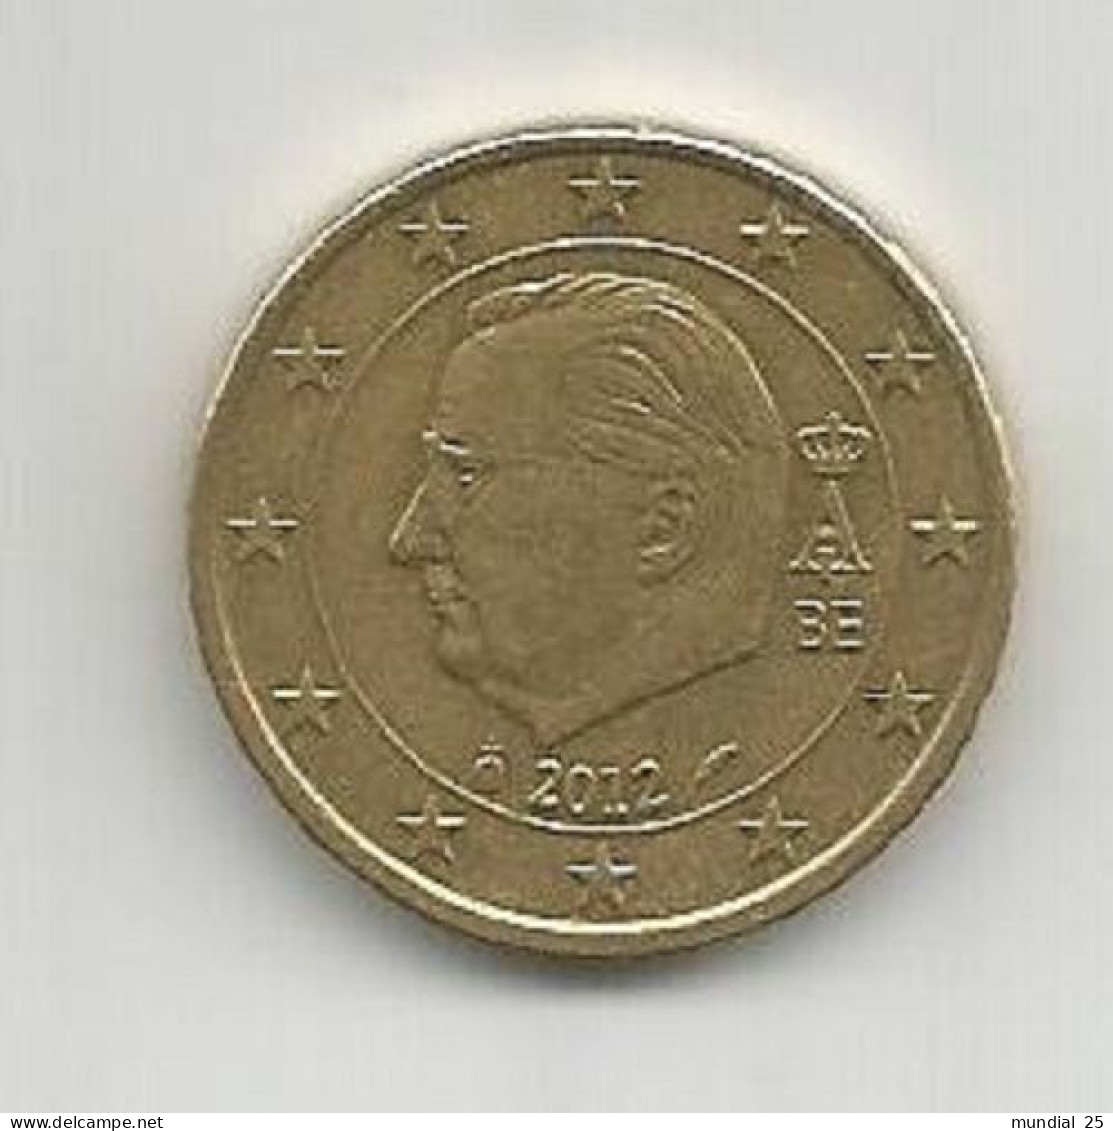 BELGIUM 50 EURO CENT 2012 - Belgien